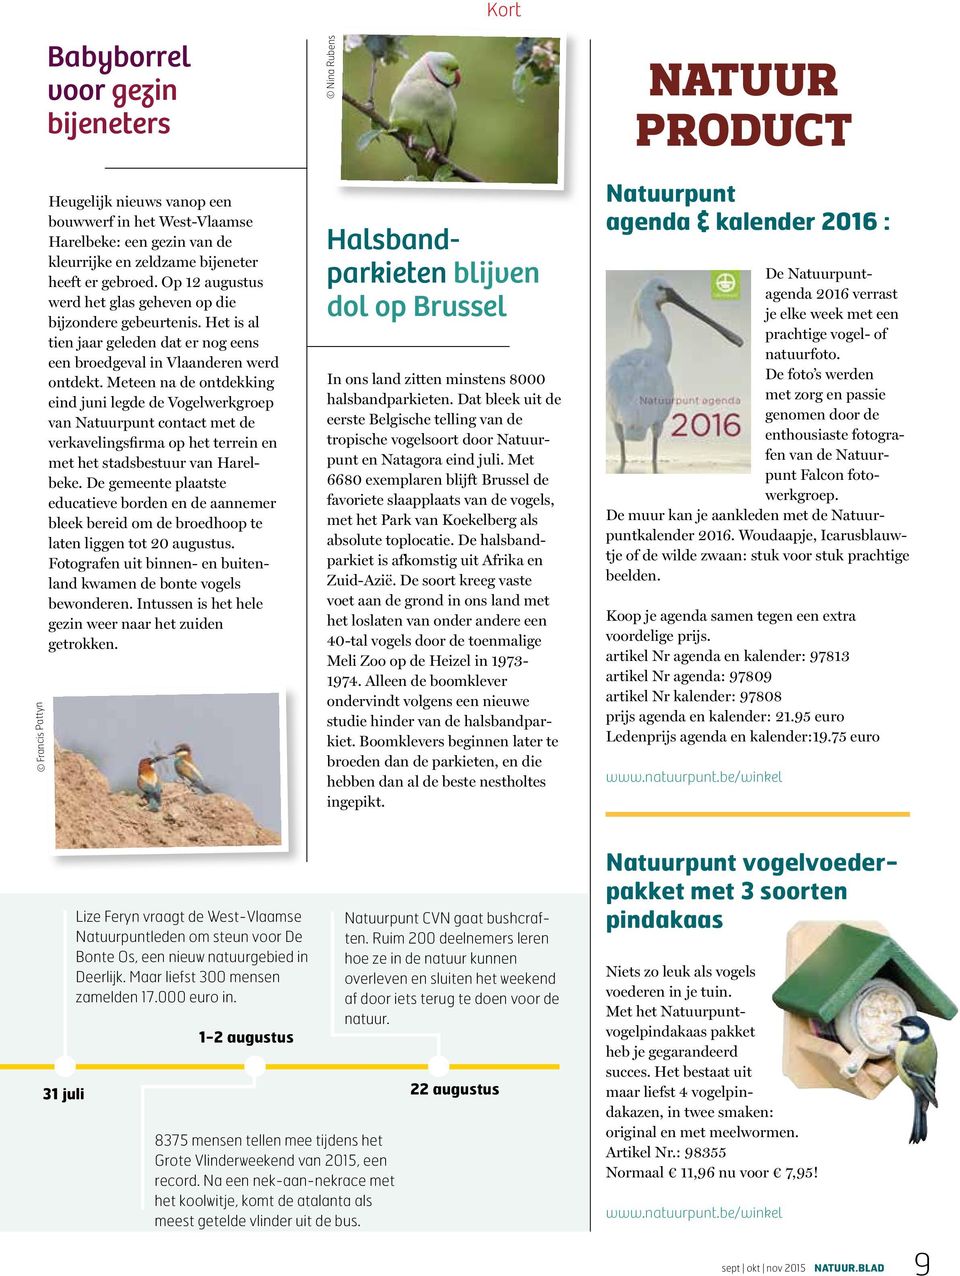 Meteen na de ontdekking eind juni legde de Vogelwerkgroep van Natuurpunt contact met de verkavelingsfirma op het terrein en met het stadsbestuur van Harelbeke.